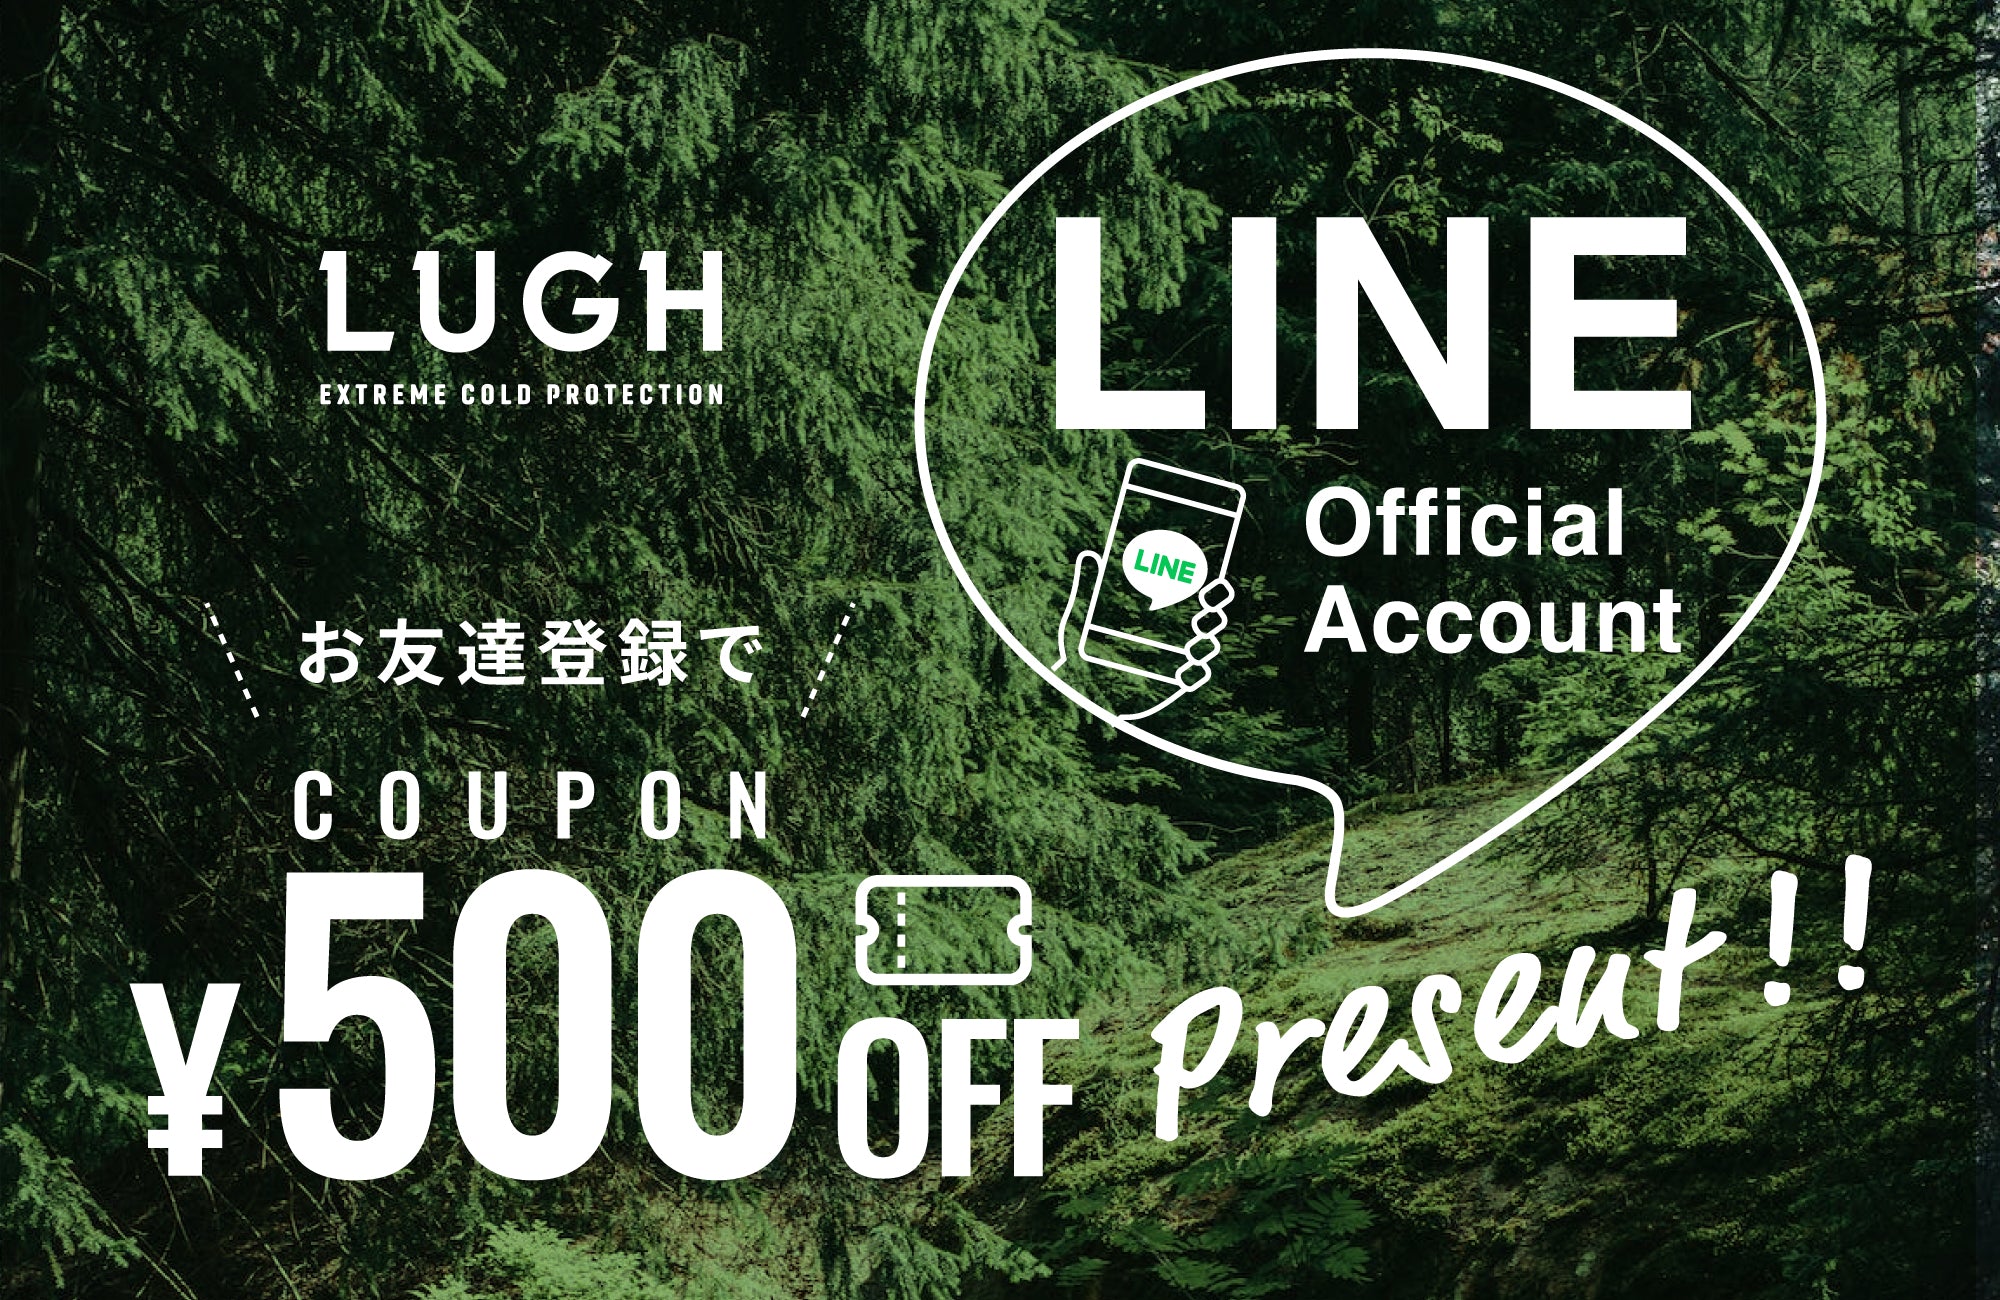 「LUGH公式LINE」新規お友達で [ 500円OFFクーポン ] プレゼント!! [ 終了 ]